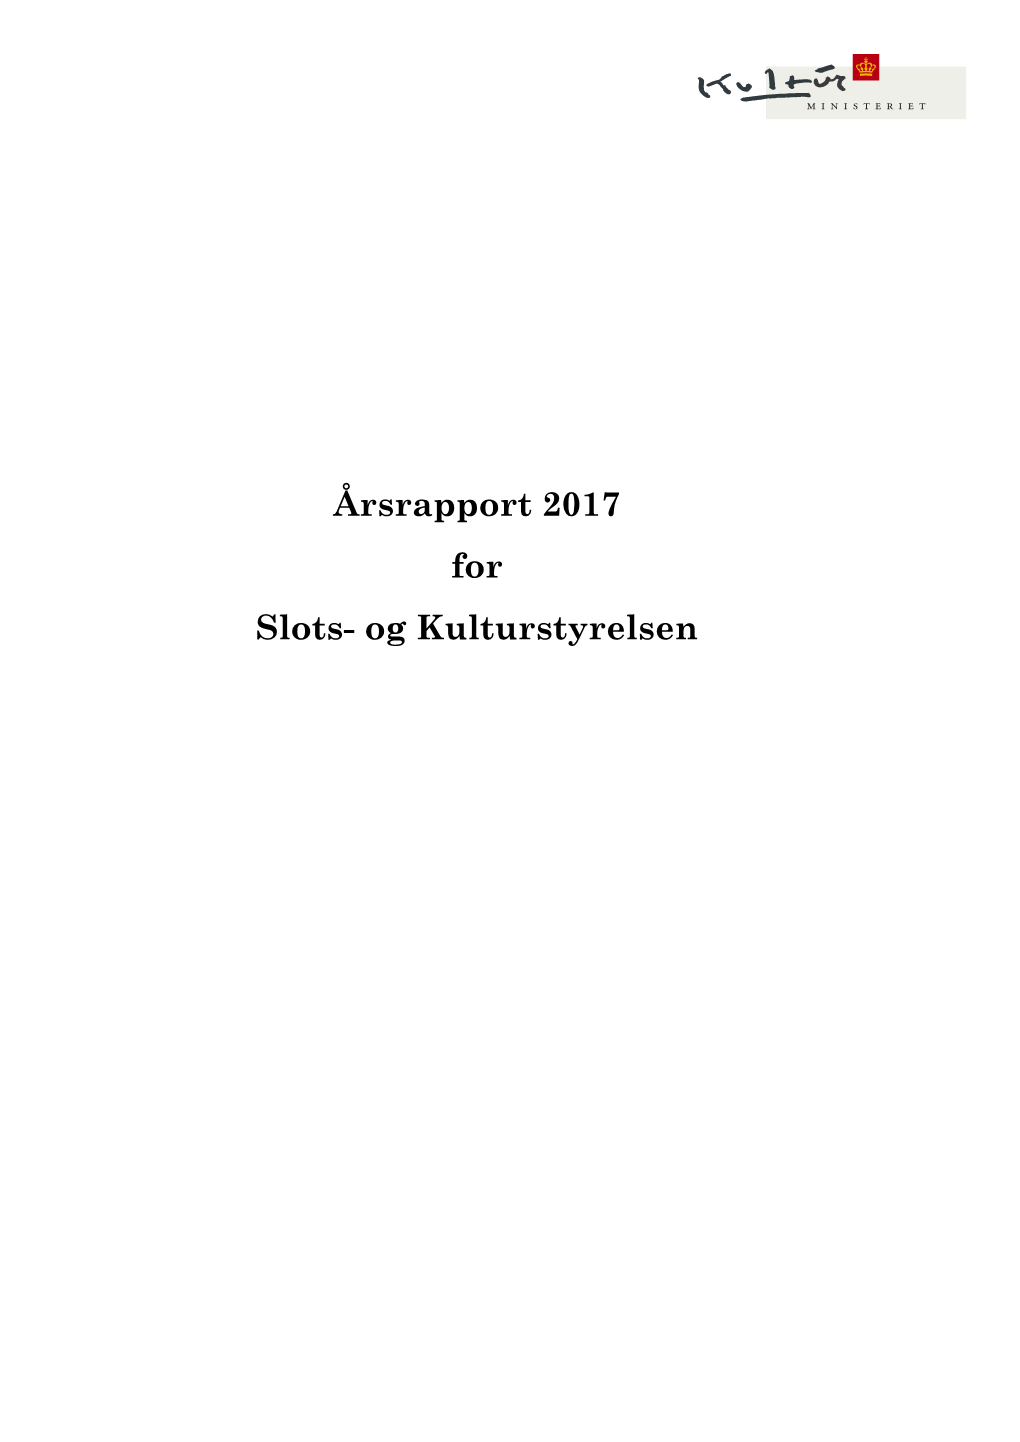 Årsrapport 2017 for Slots- Og Kulturstyrelsen